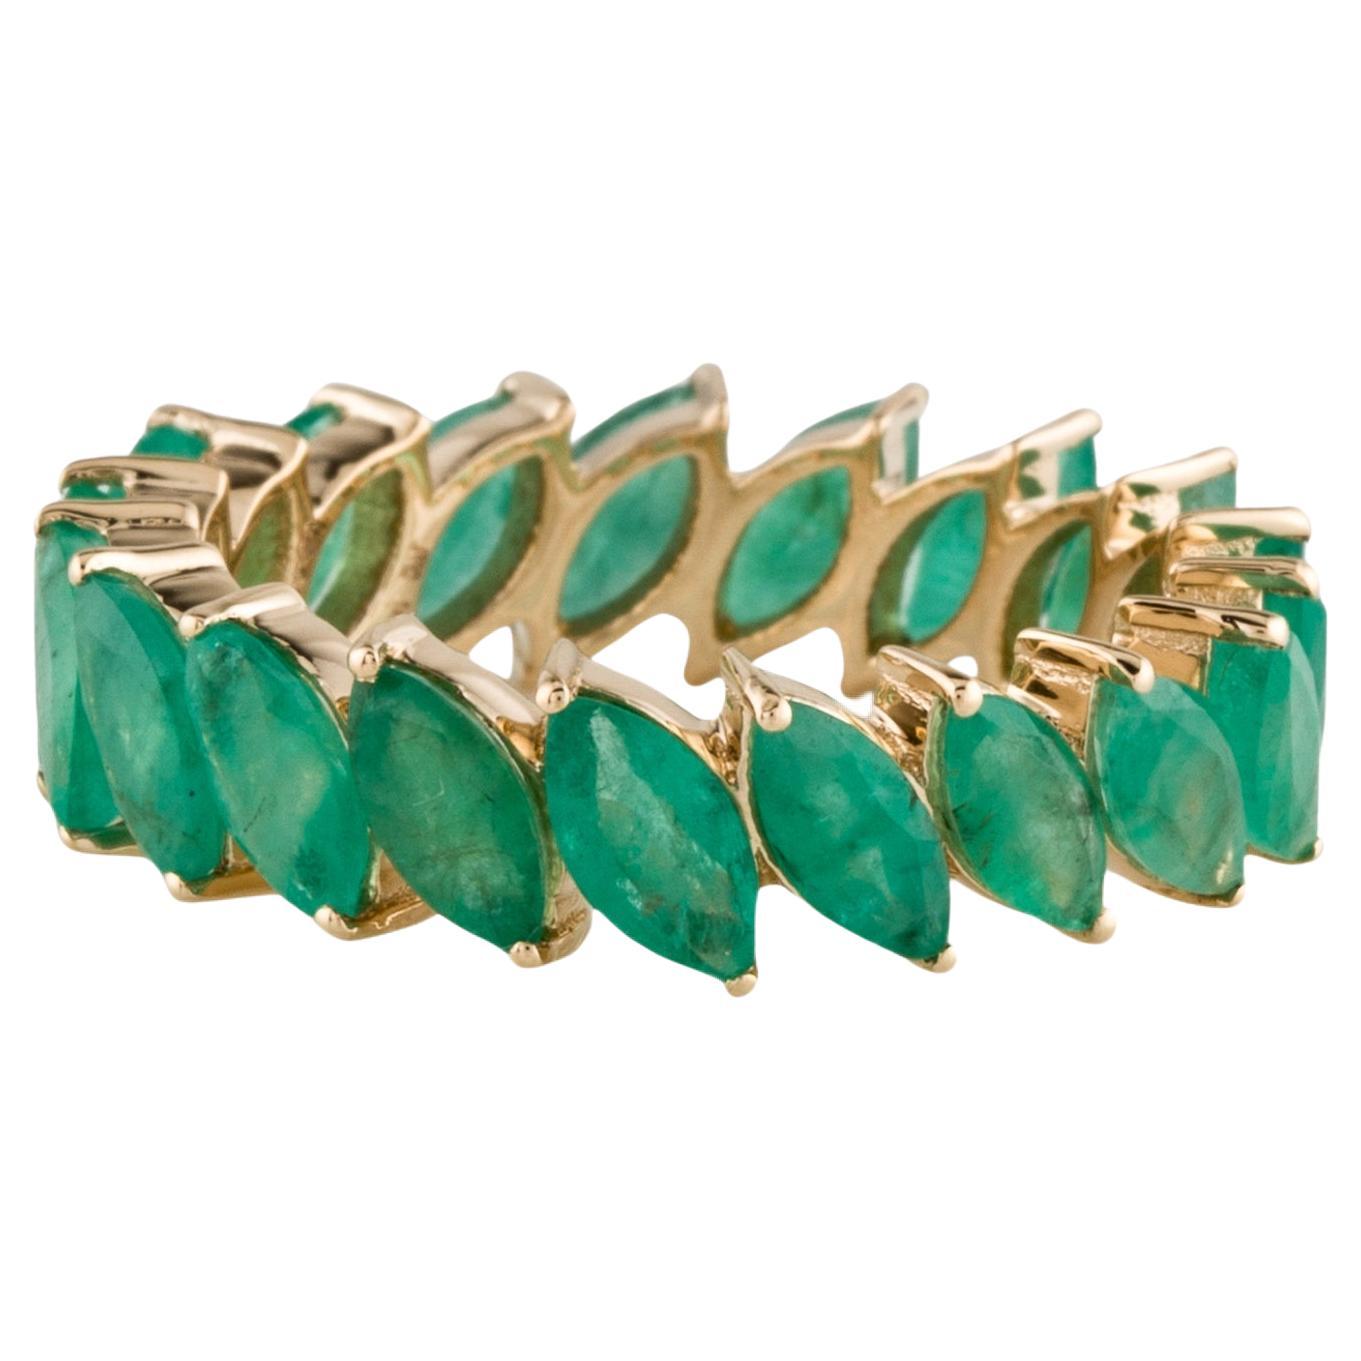 Elegant 14K Emerald Eternity Band Ring - 3.23ctw Gemstones - Size 6.75  Vintage For Sale